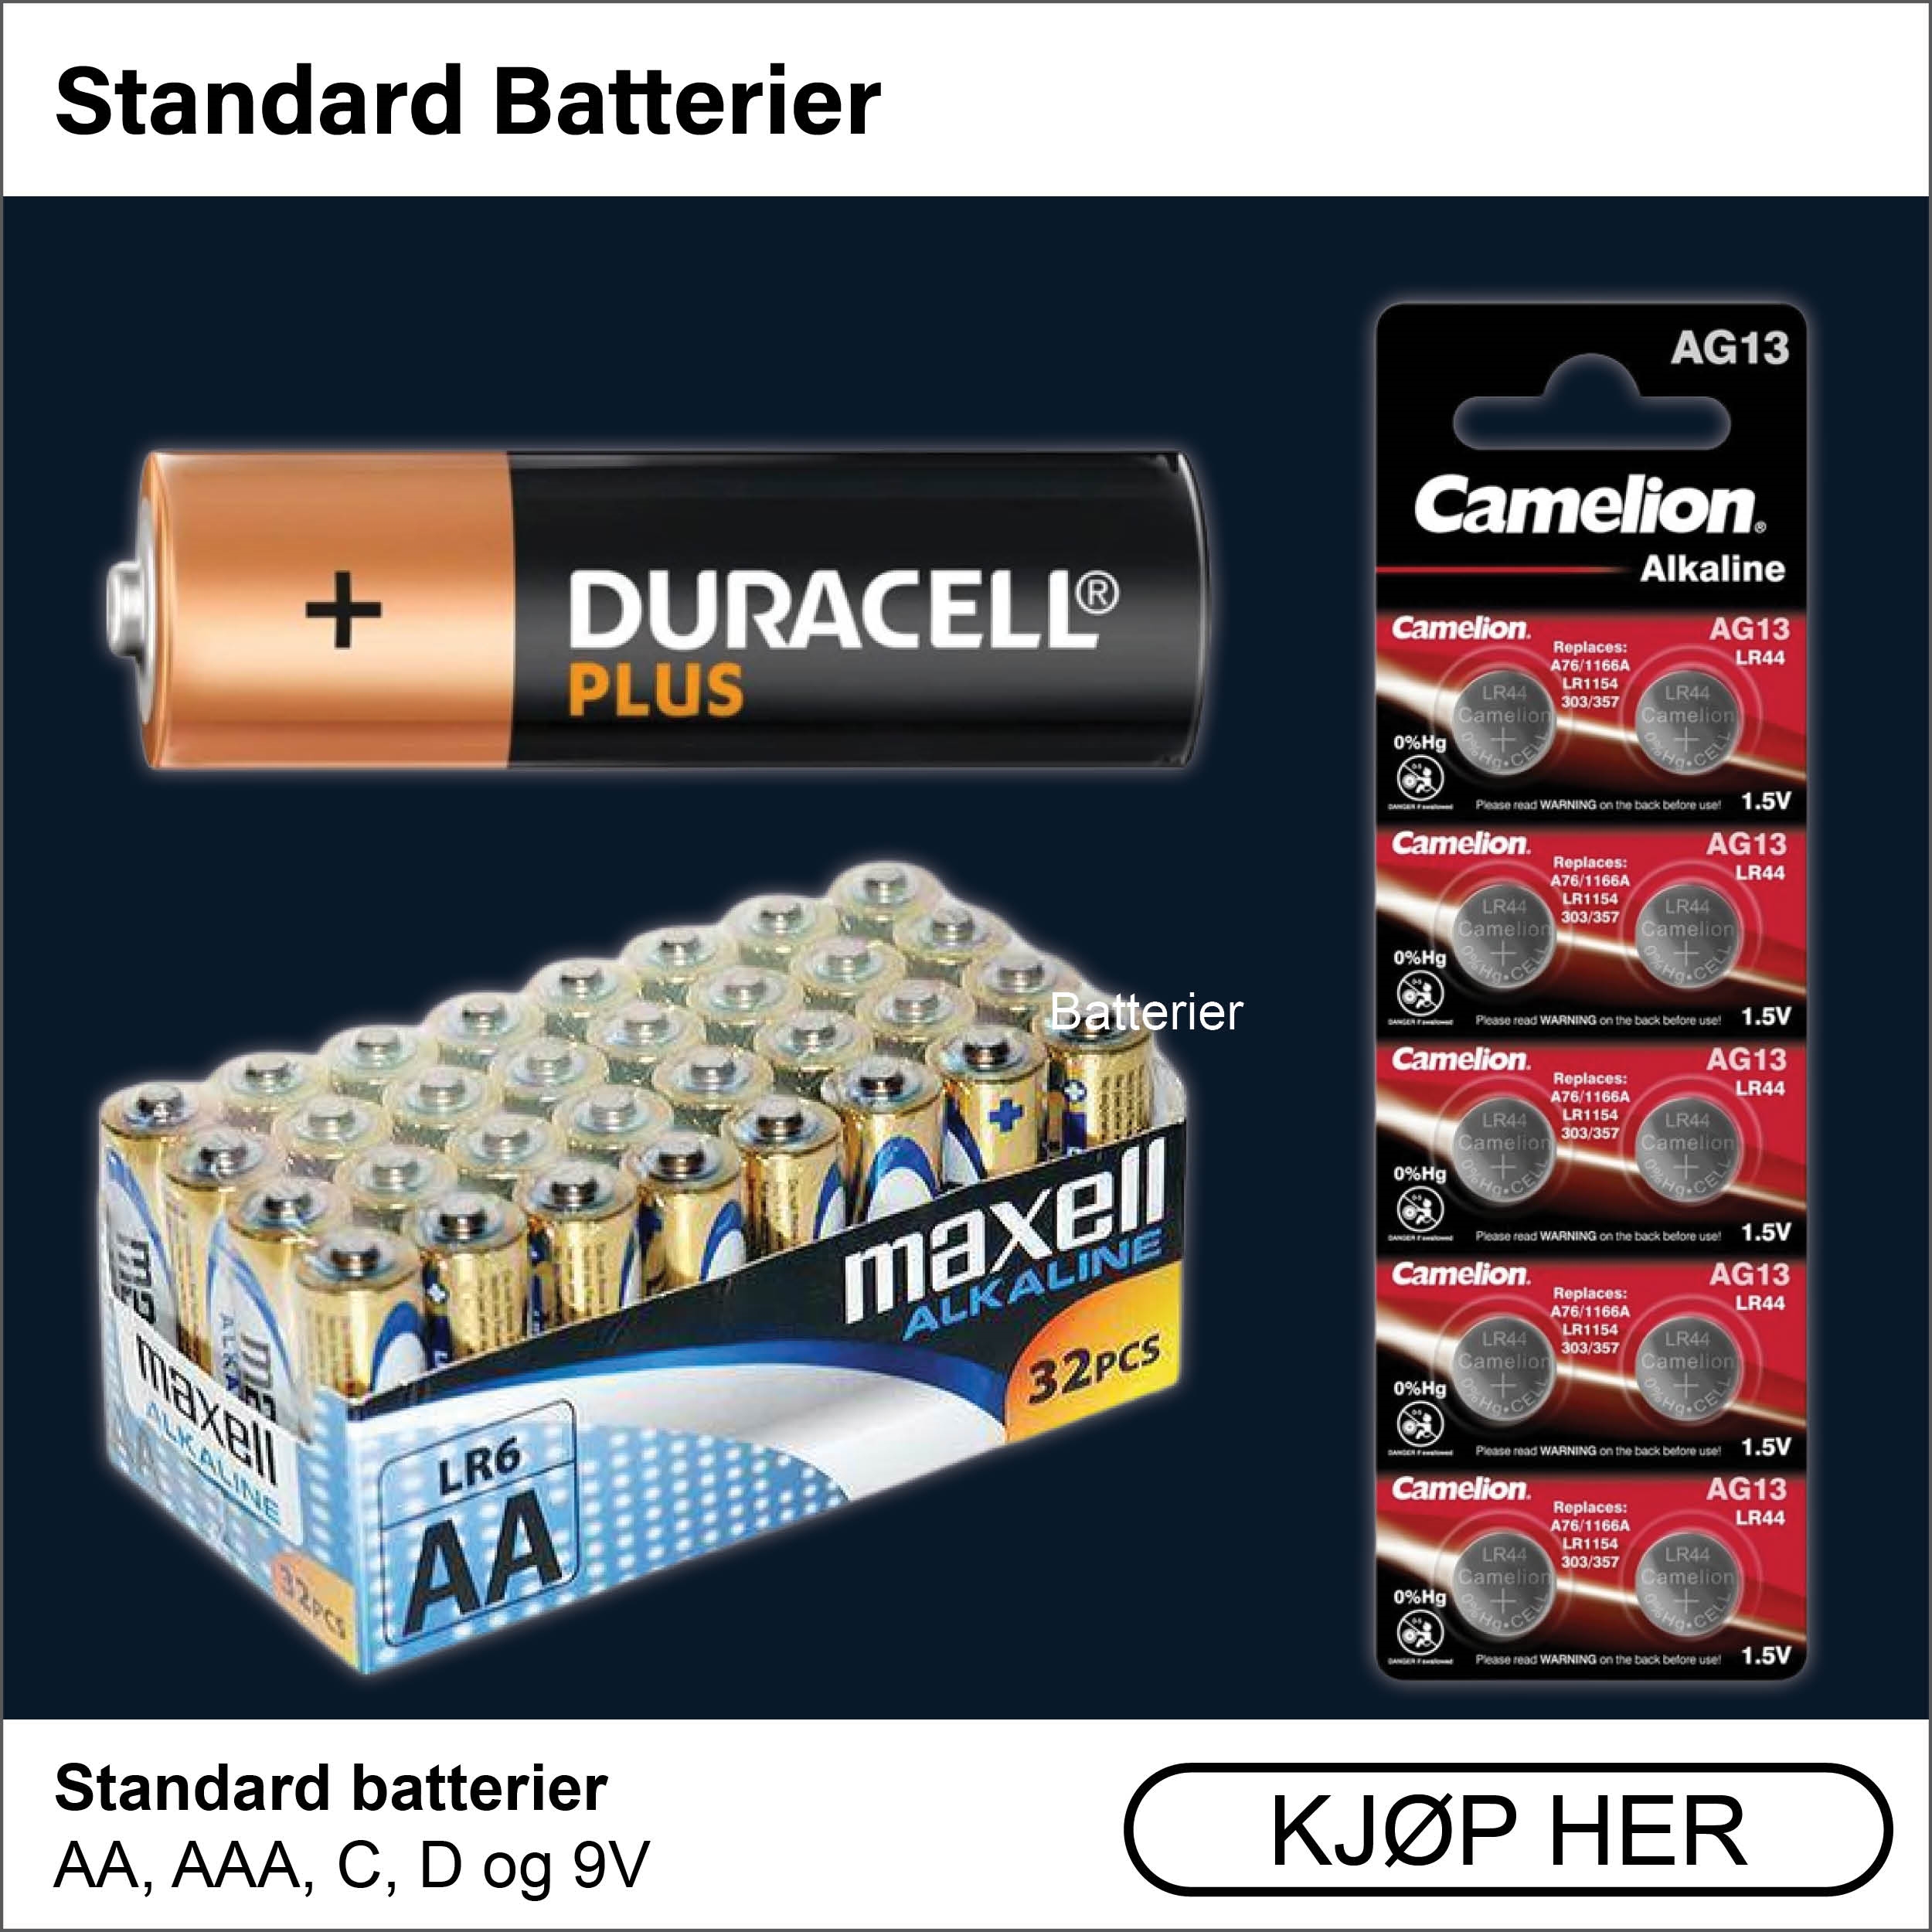 Standard batterier